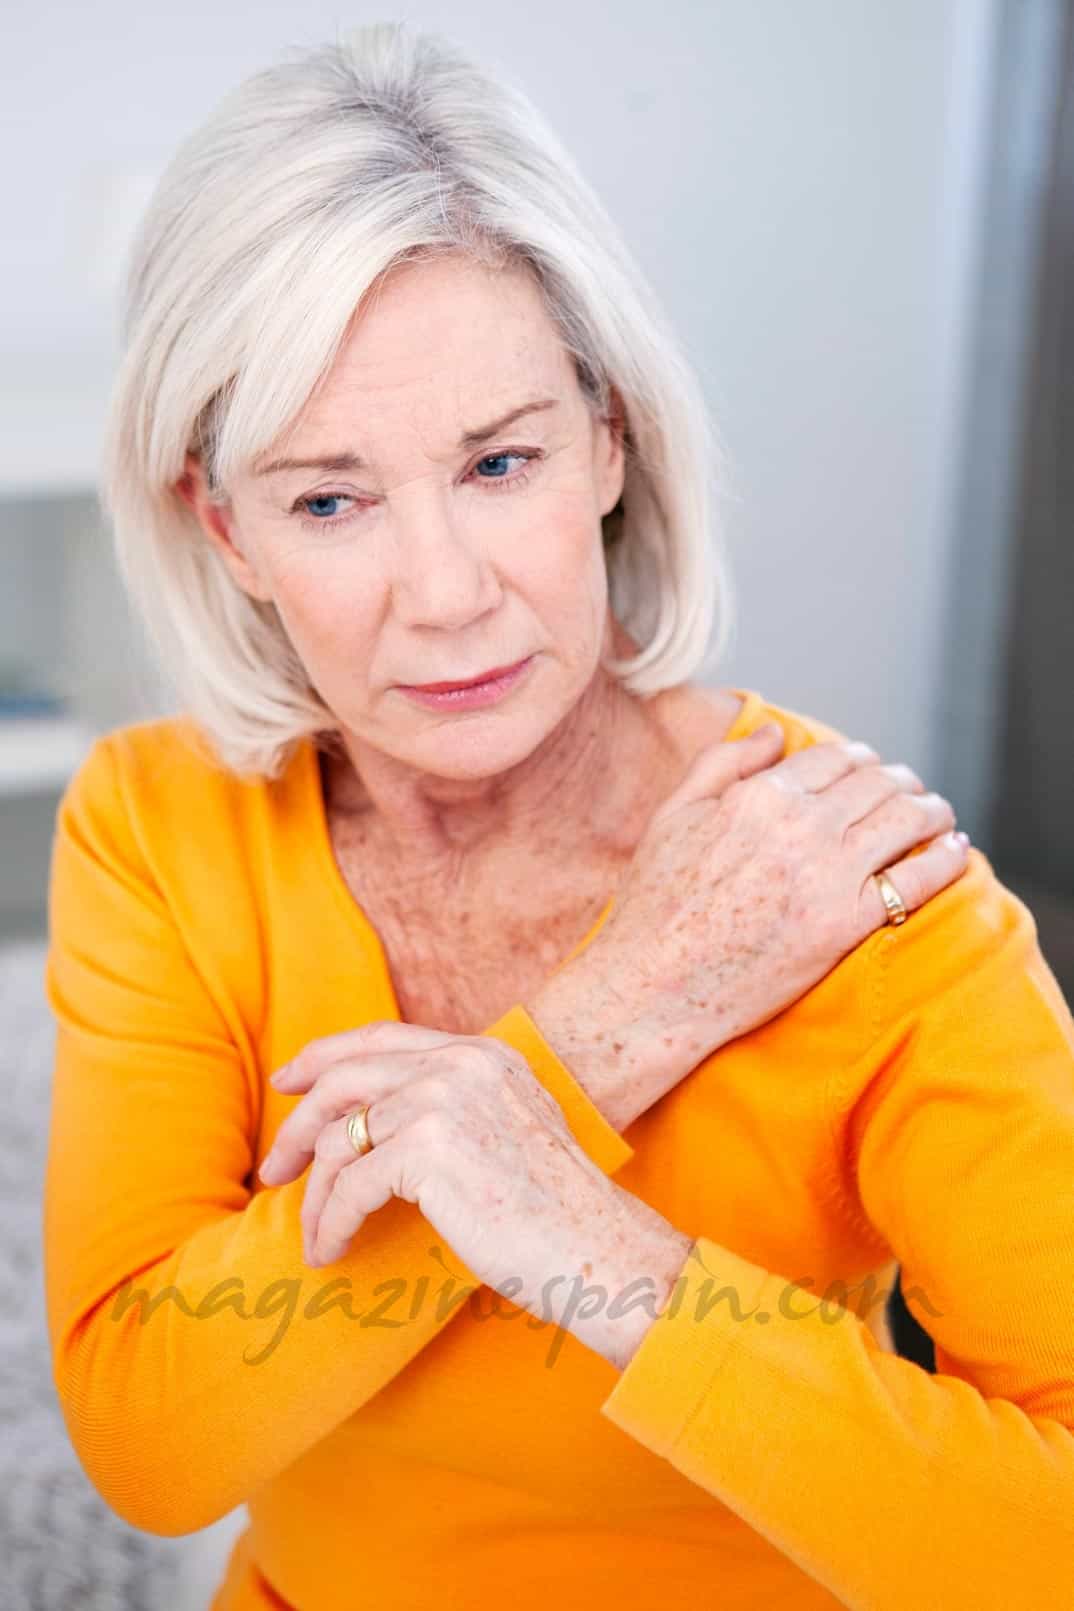 Artrosis – Osteoartritis deformante